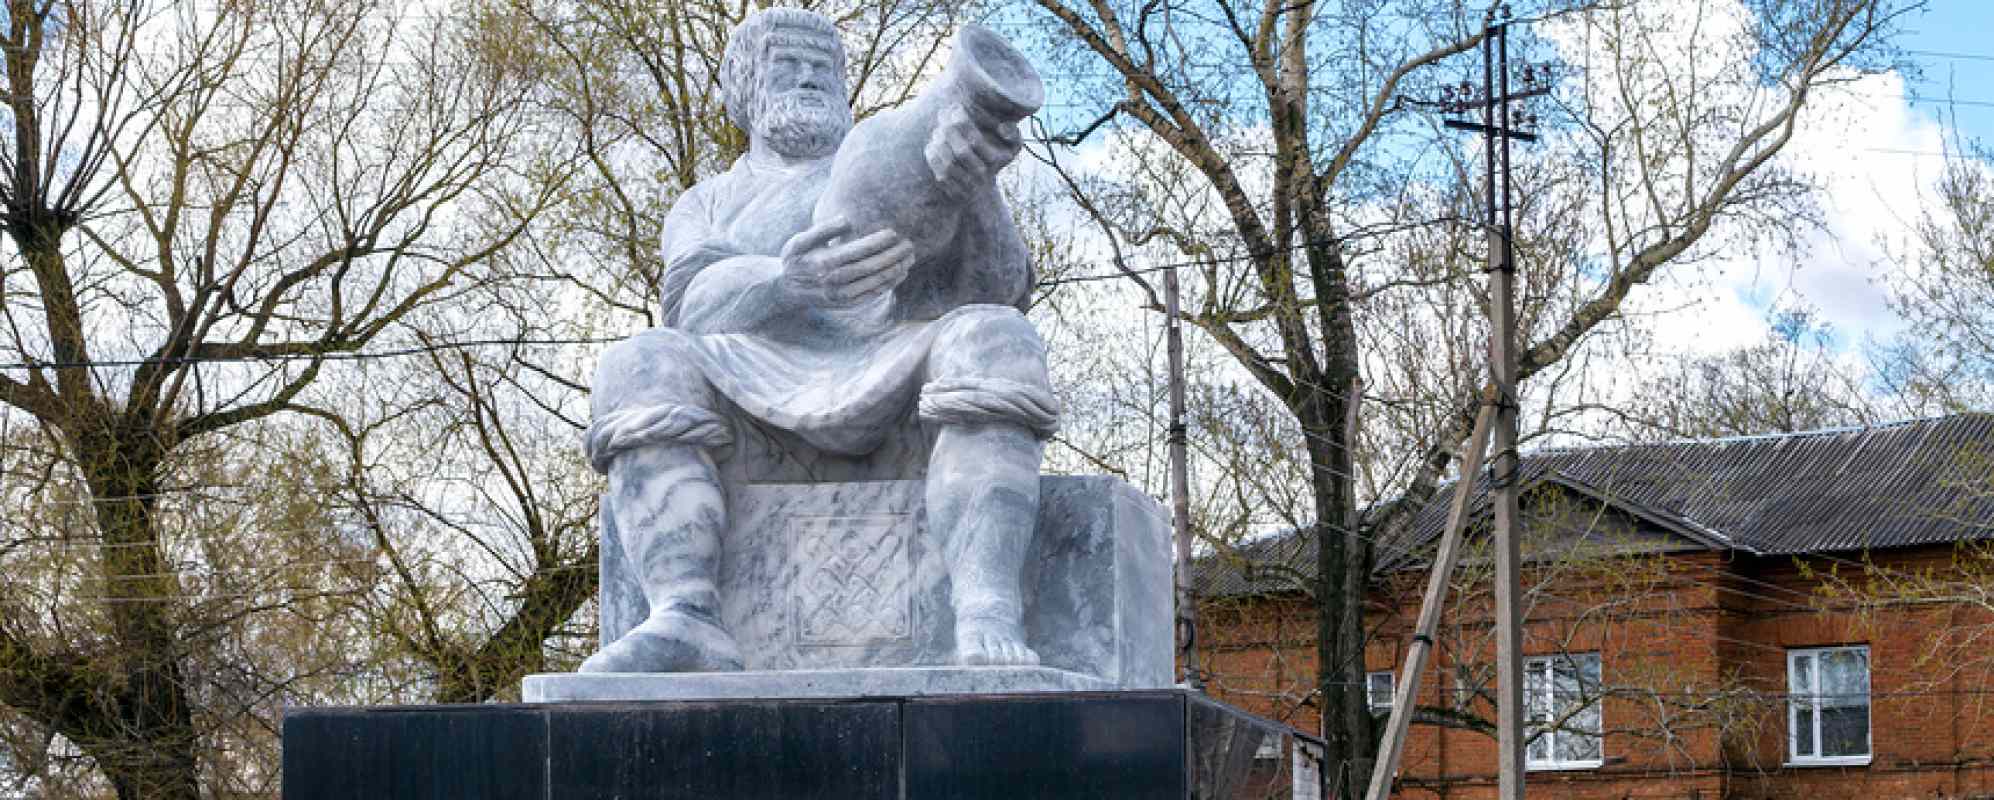 Памятник гончару Дёмке Кирееву (Скопин)